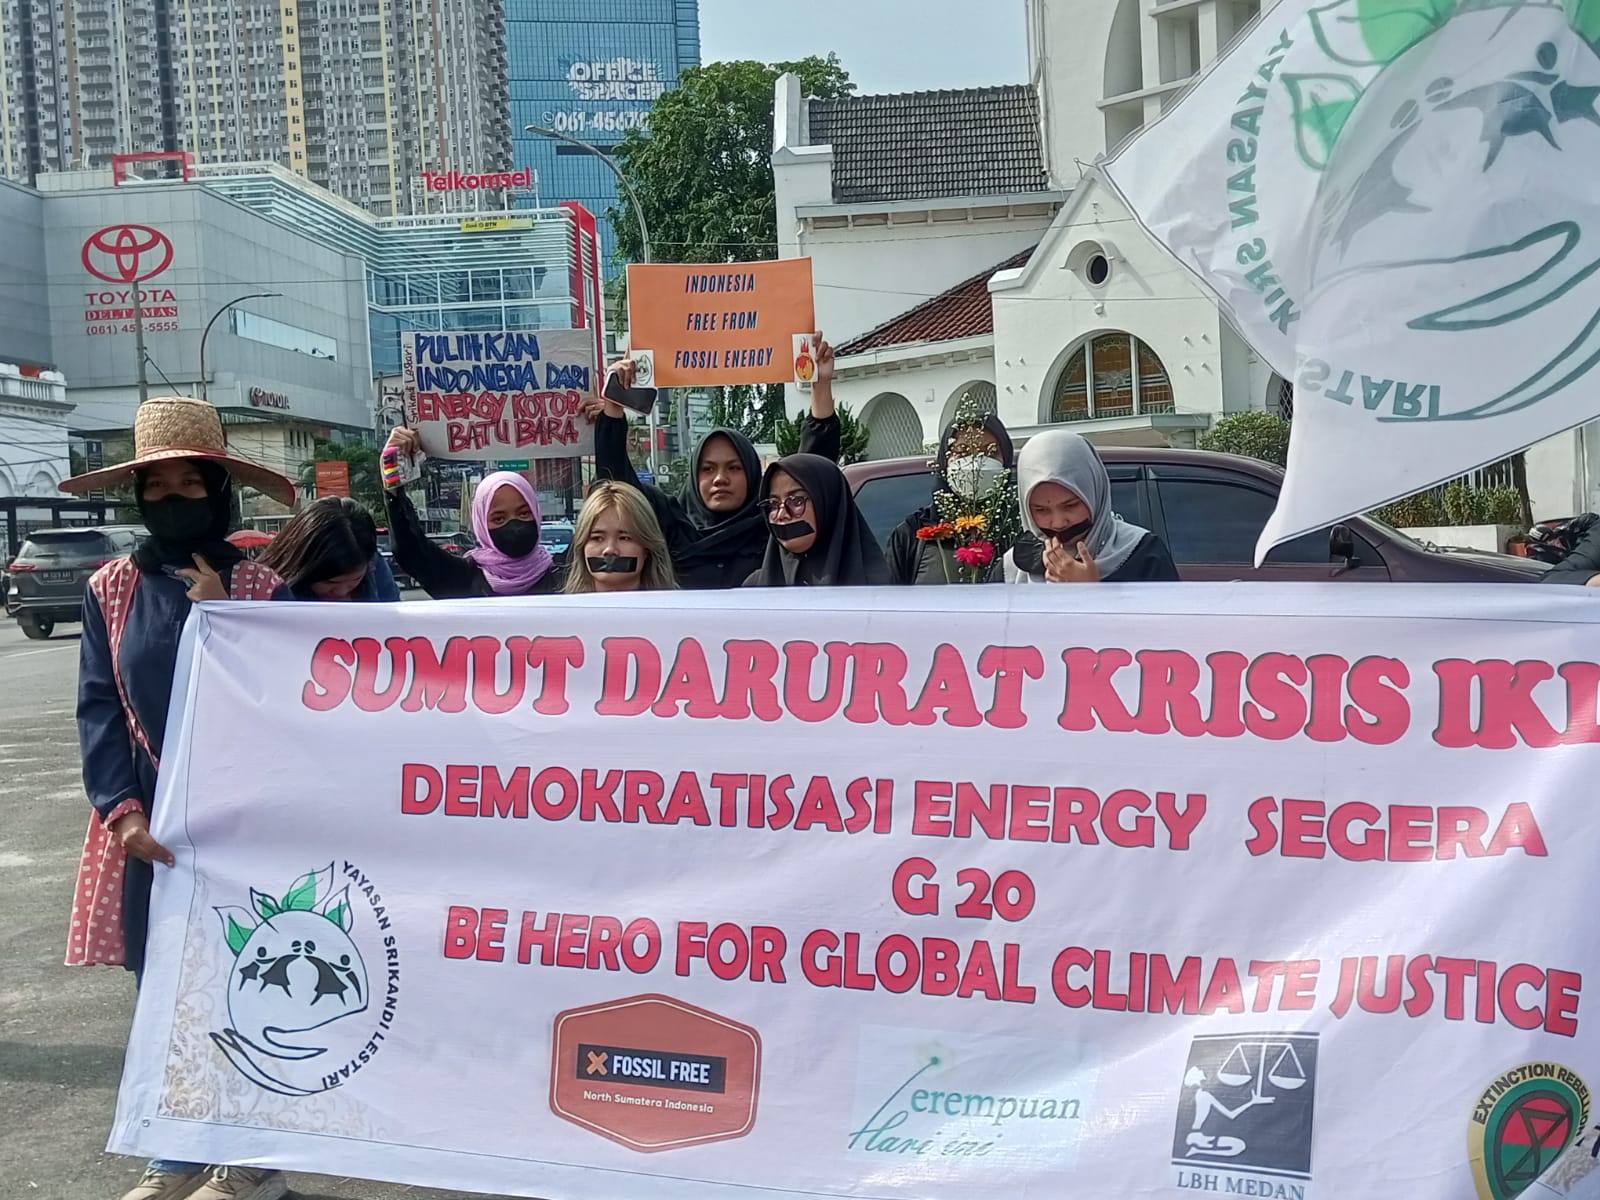 Sumut darurat, perlu aksi serius atasi krisis iklim. Foto: Ayat S Karokaro/ Mongabay Indonesia